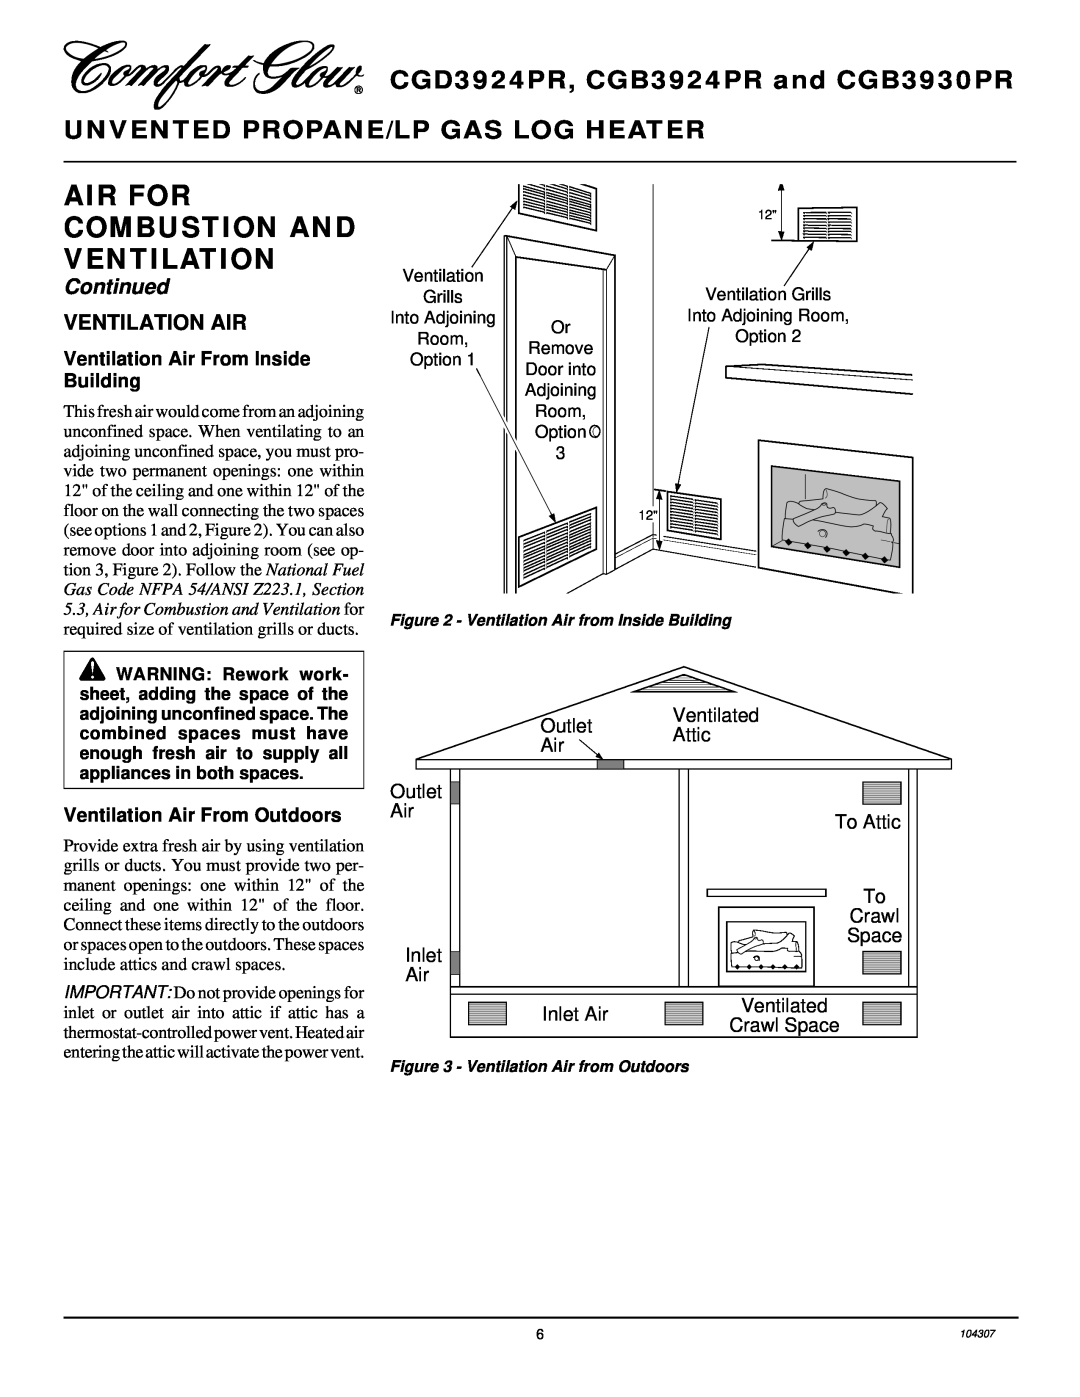 Desa CGD3924PR Ventilation Air From Inside, Building, Ventilation Air From Outdoors, Ventilated Outlet Attic Air 